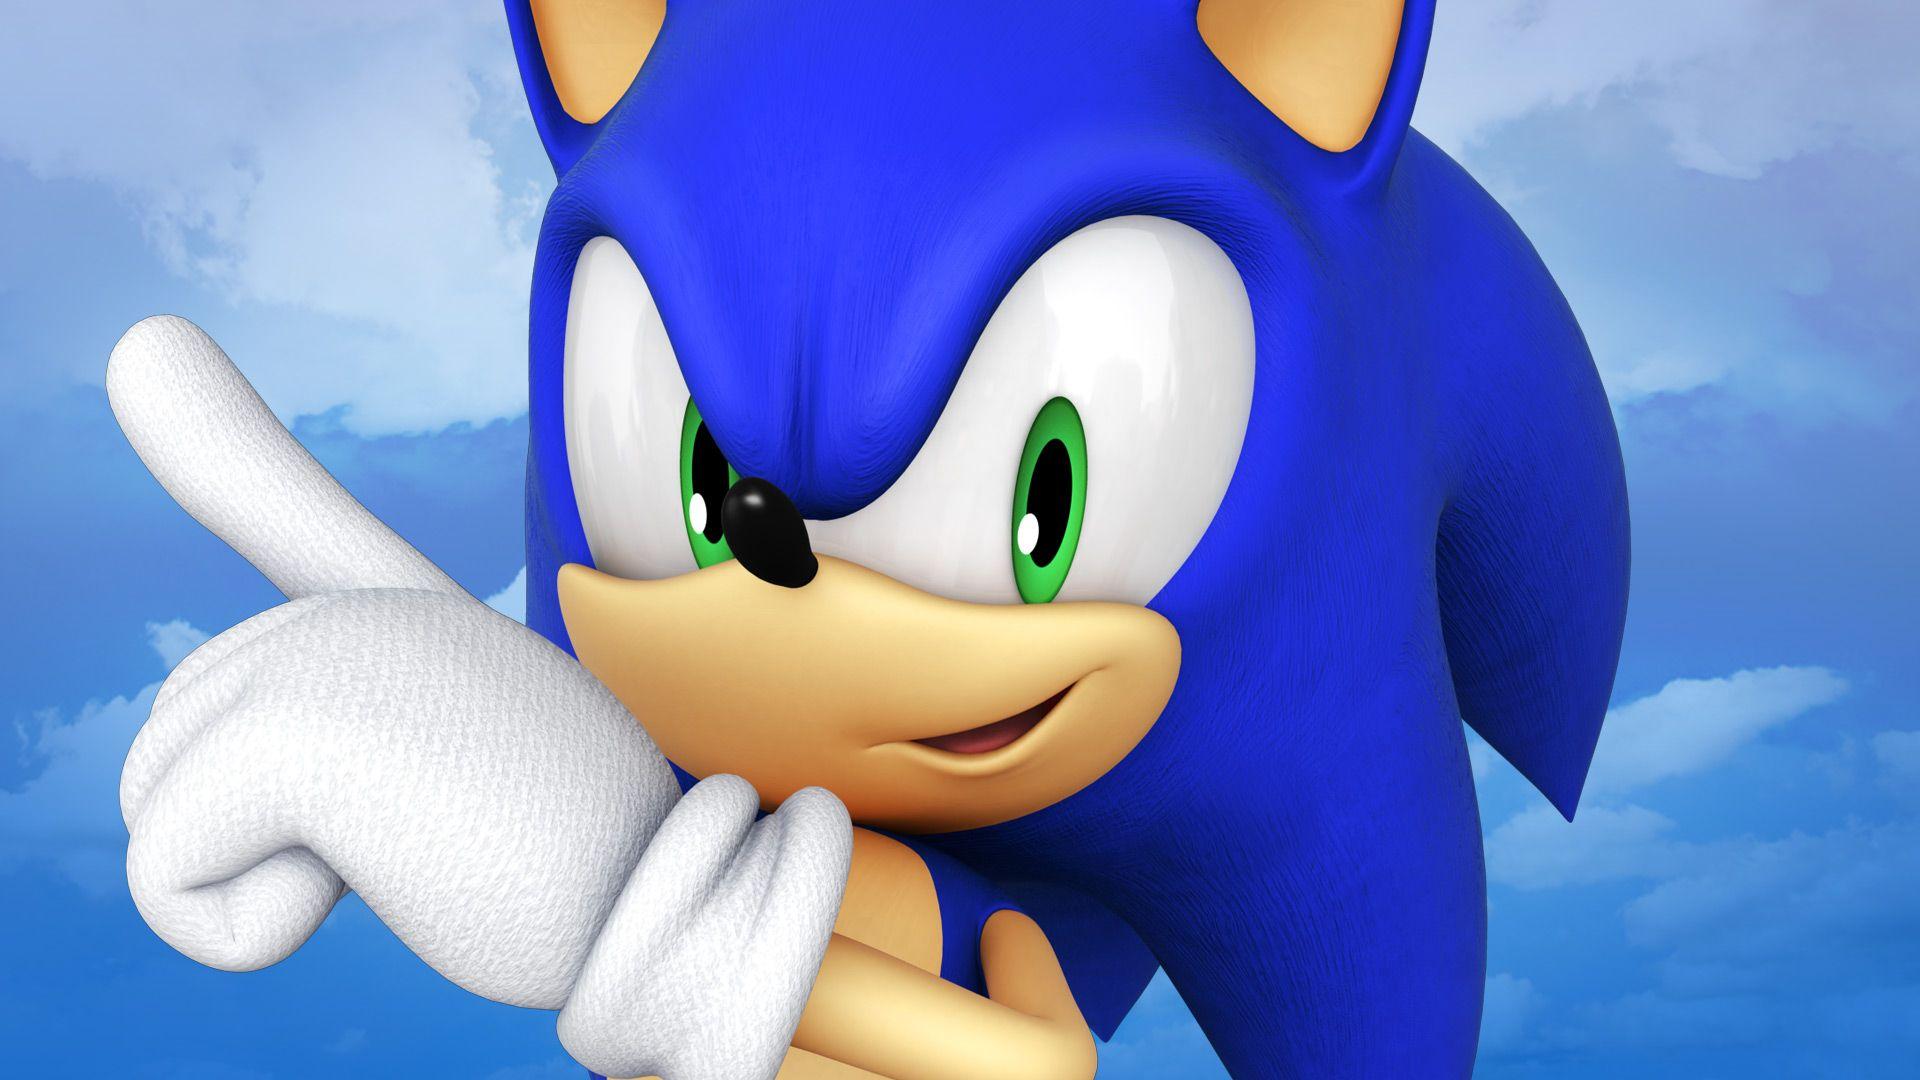 Sonic the Hedgehog Movie Adds James Marsden. Den of Geek